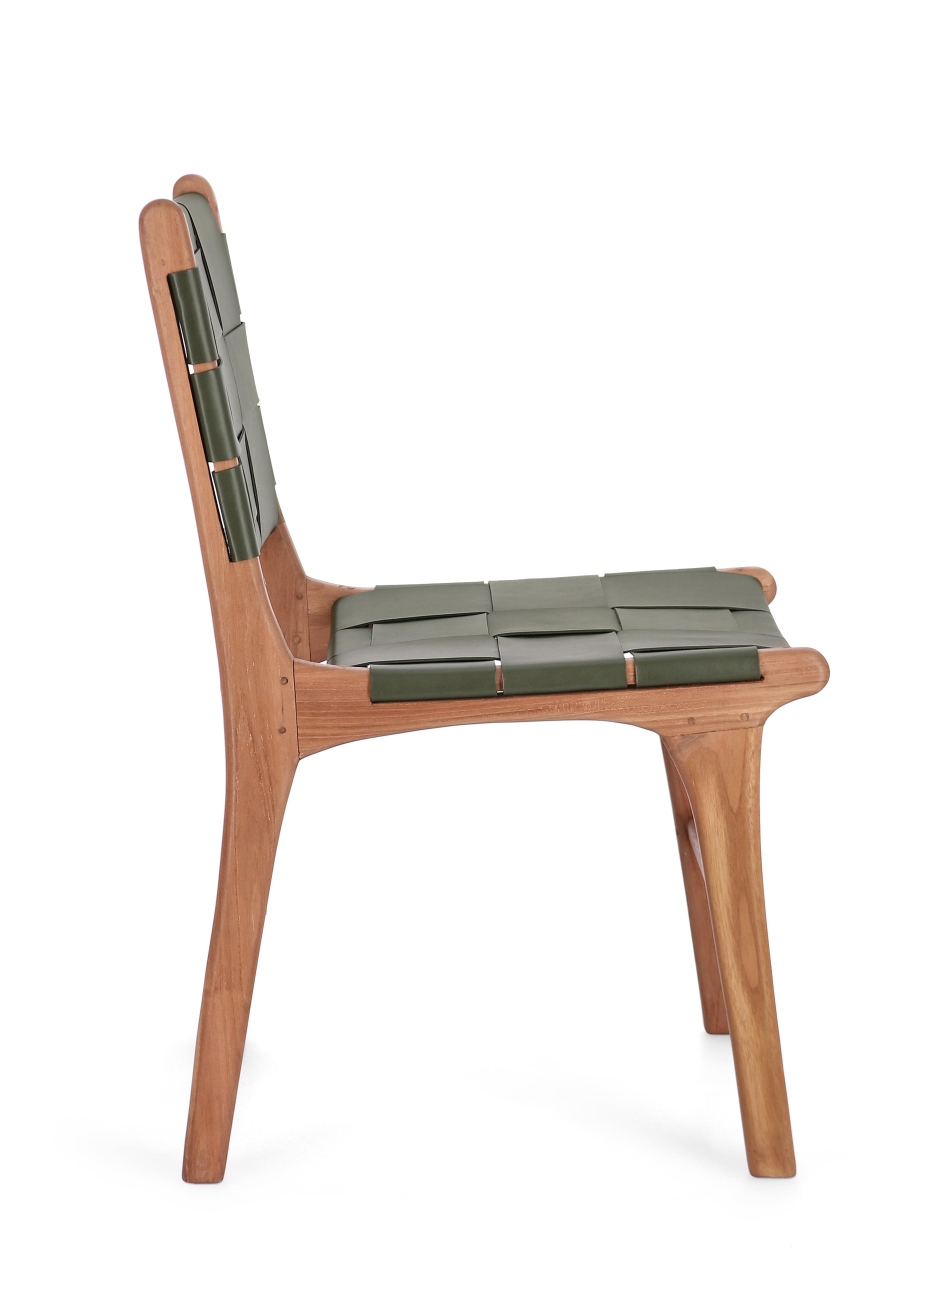 Der Esszimmerstuhl Joanna überzeugt mit seinem modernen Stil. Gefertigt wurde er aus Leder, welches einen grünen Farbton besitzt. Das Gestell ist aus Teakholz und hat eine natürliche Farbe. Der Stuhl besitzt eine Sitzhöhe von 45 cm.